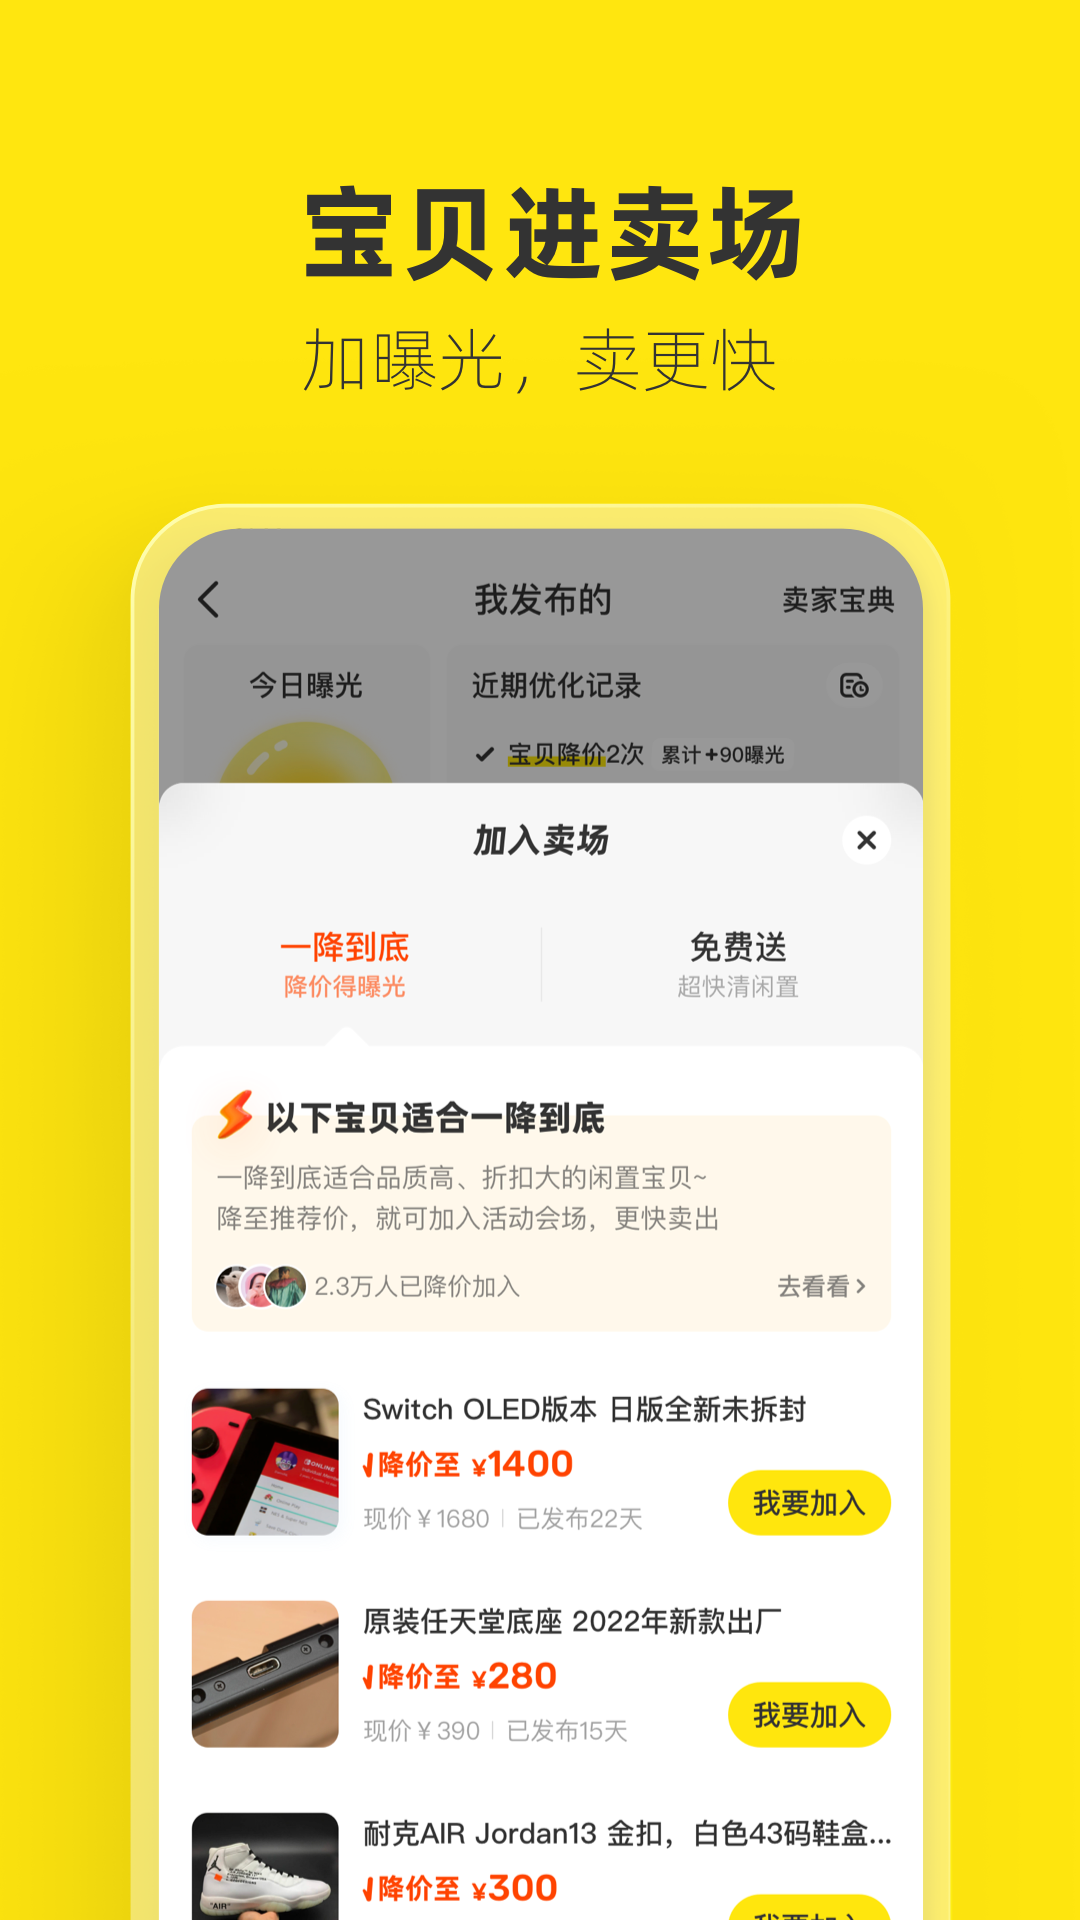 闲鱼app下载旧版最新版